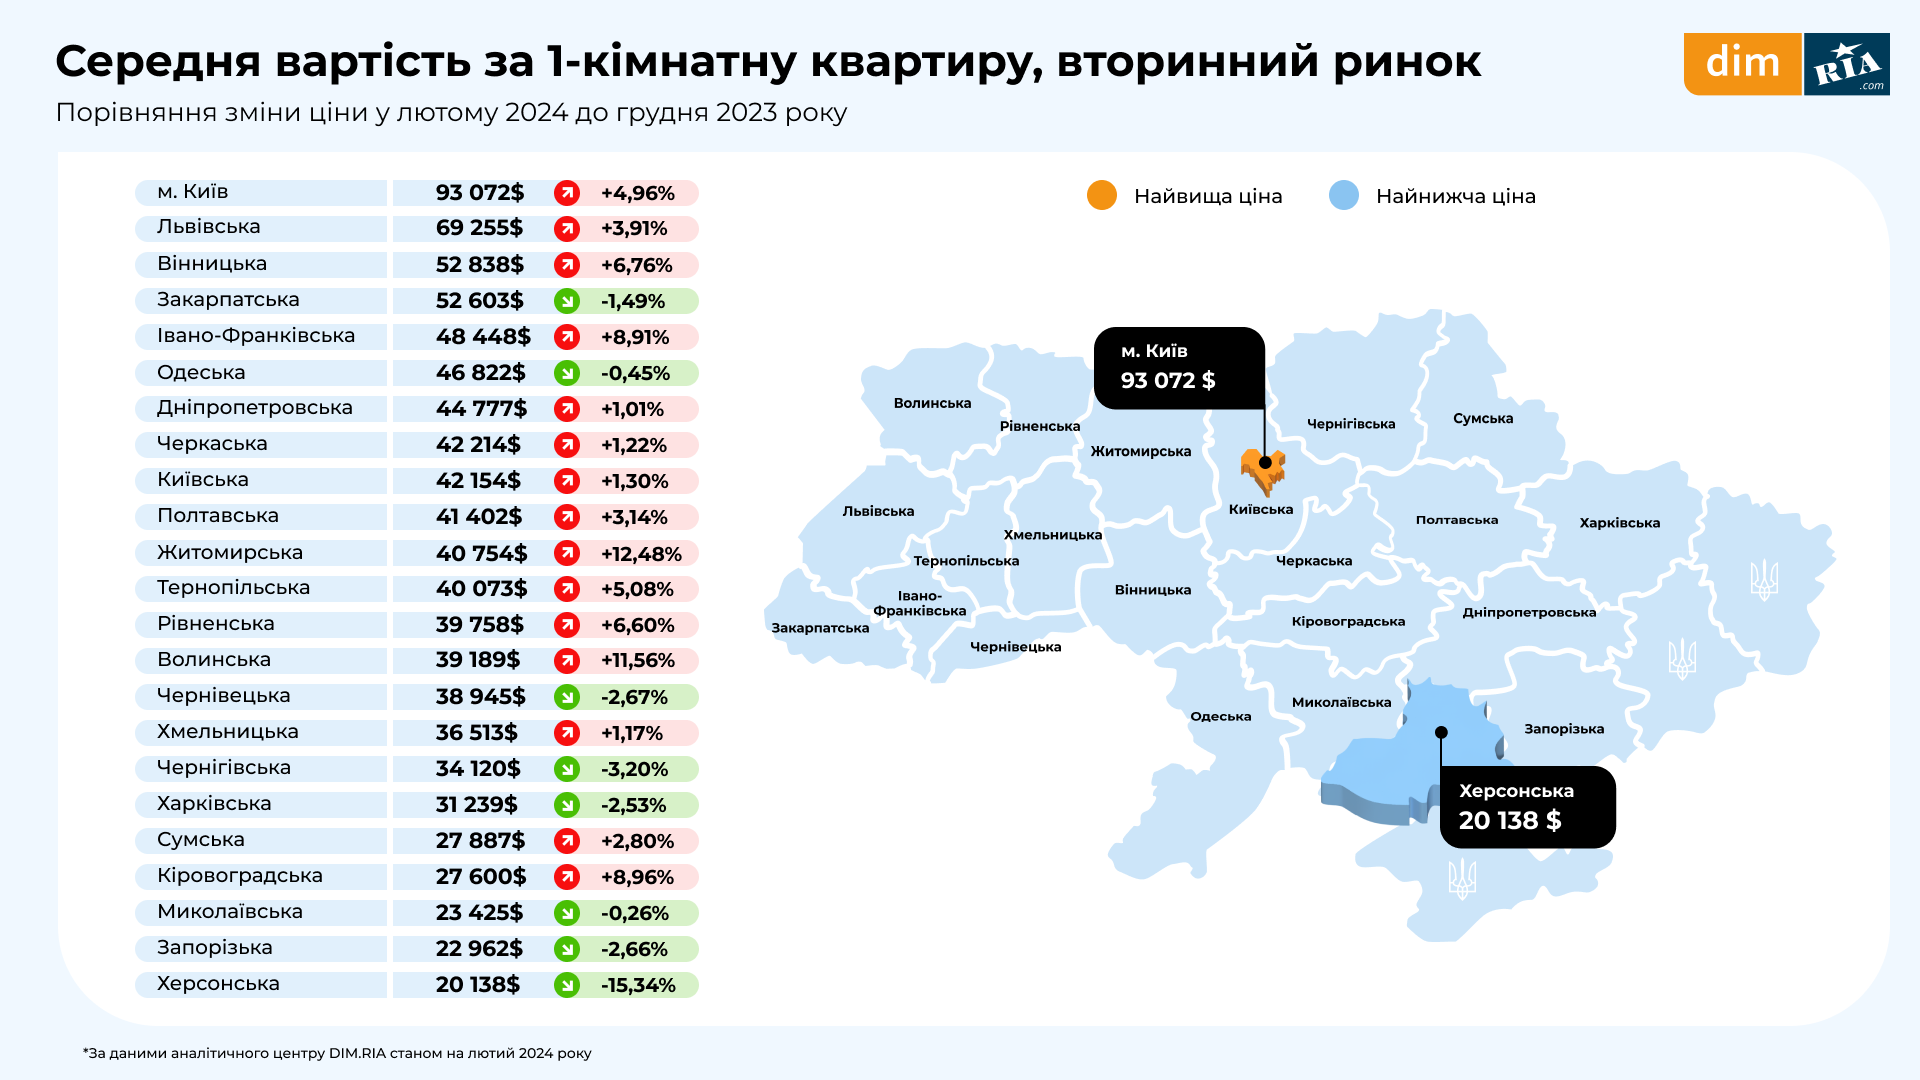 Ціни на 1-кімнатні квартири на вторинному ринку змінилися по всій Україні